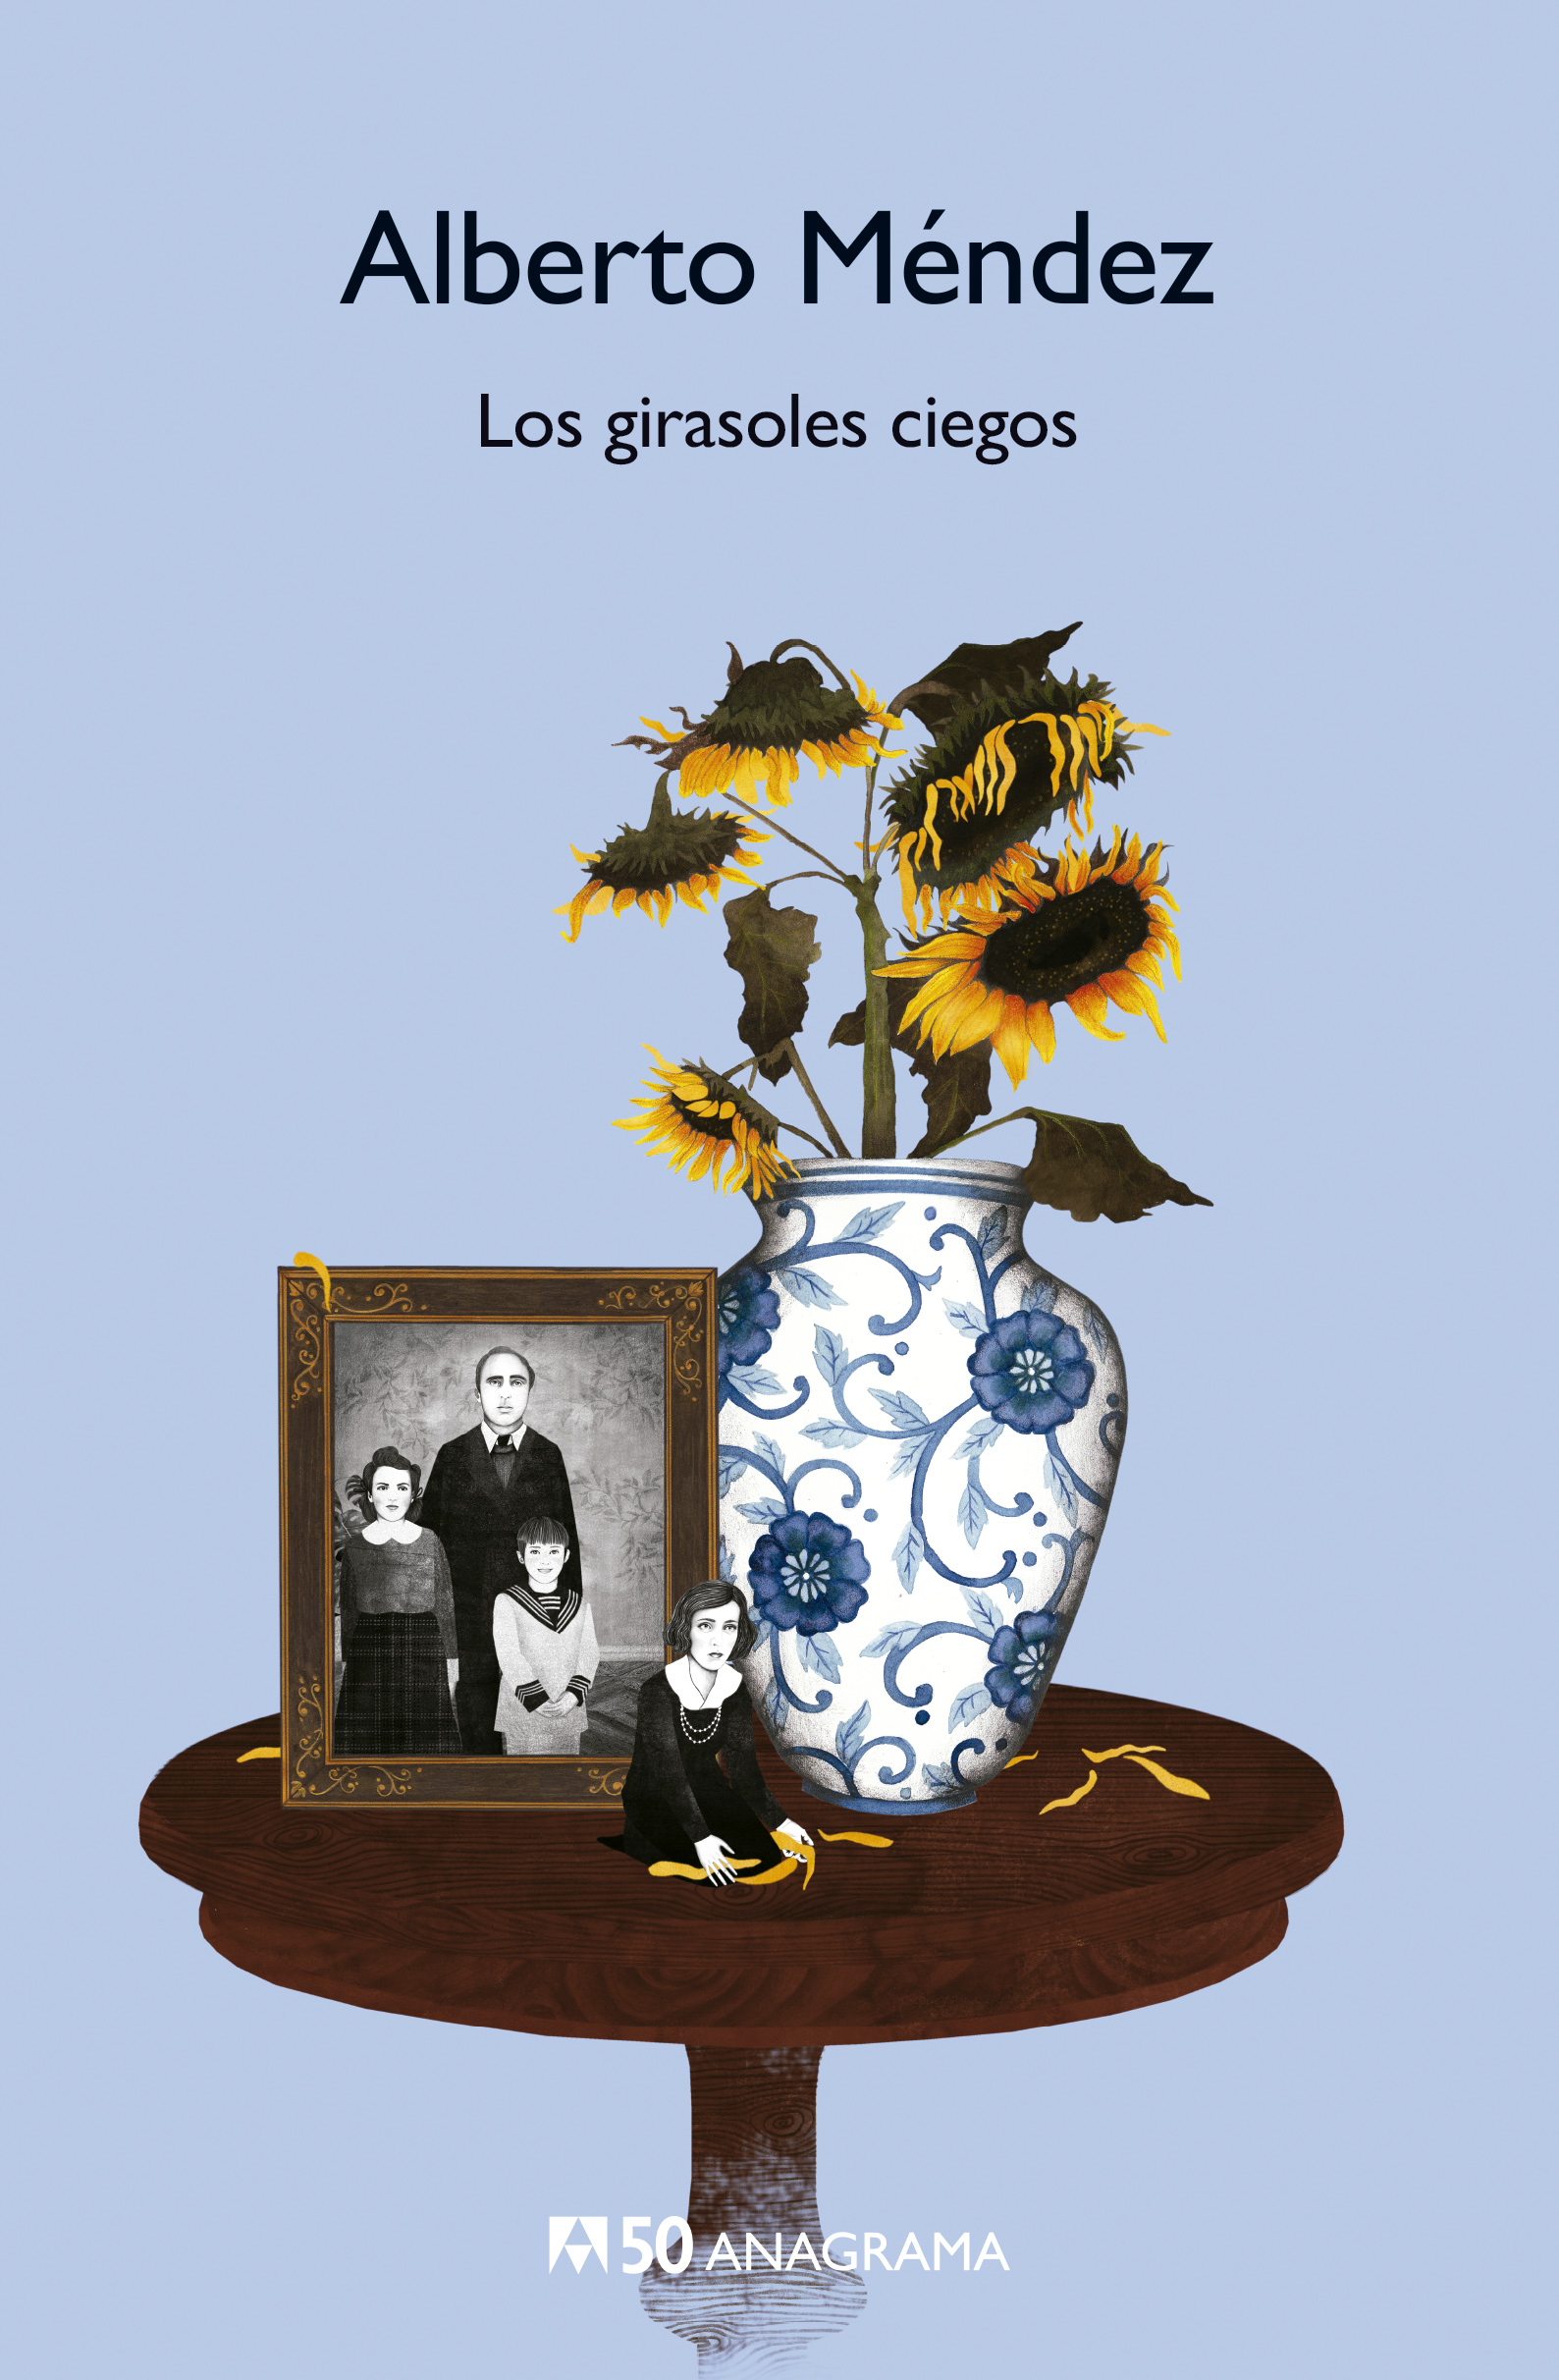 Los girasoles ciegos | Katakrak Liburuak - Librería, Cafetería, Editorial,  Centro de estudios críticos, cooperativa, economía social